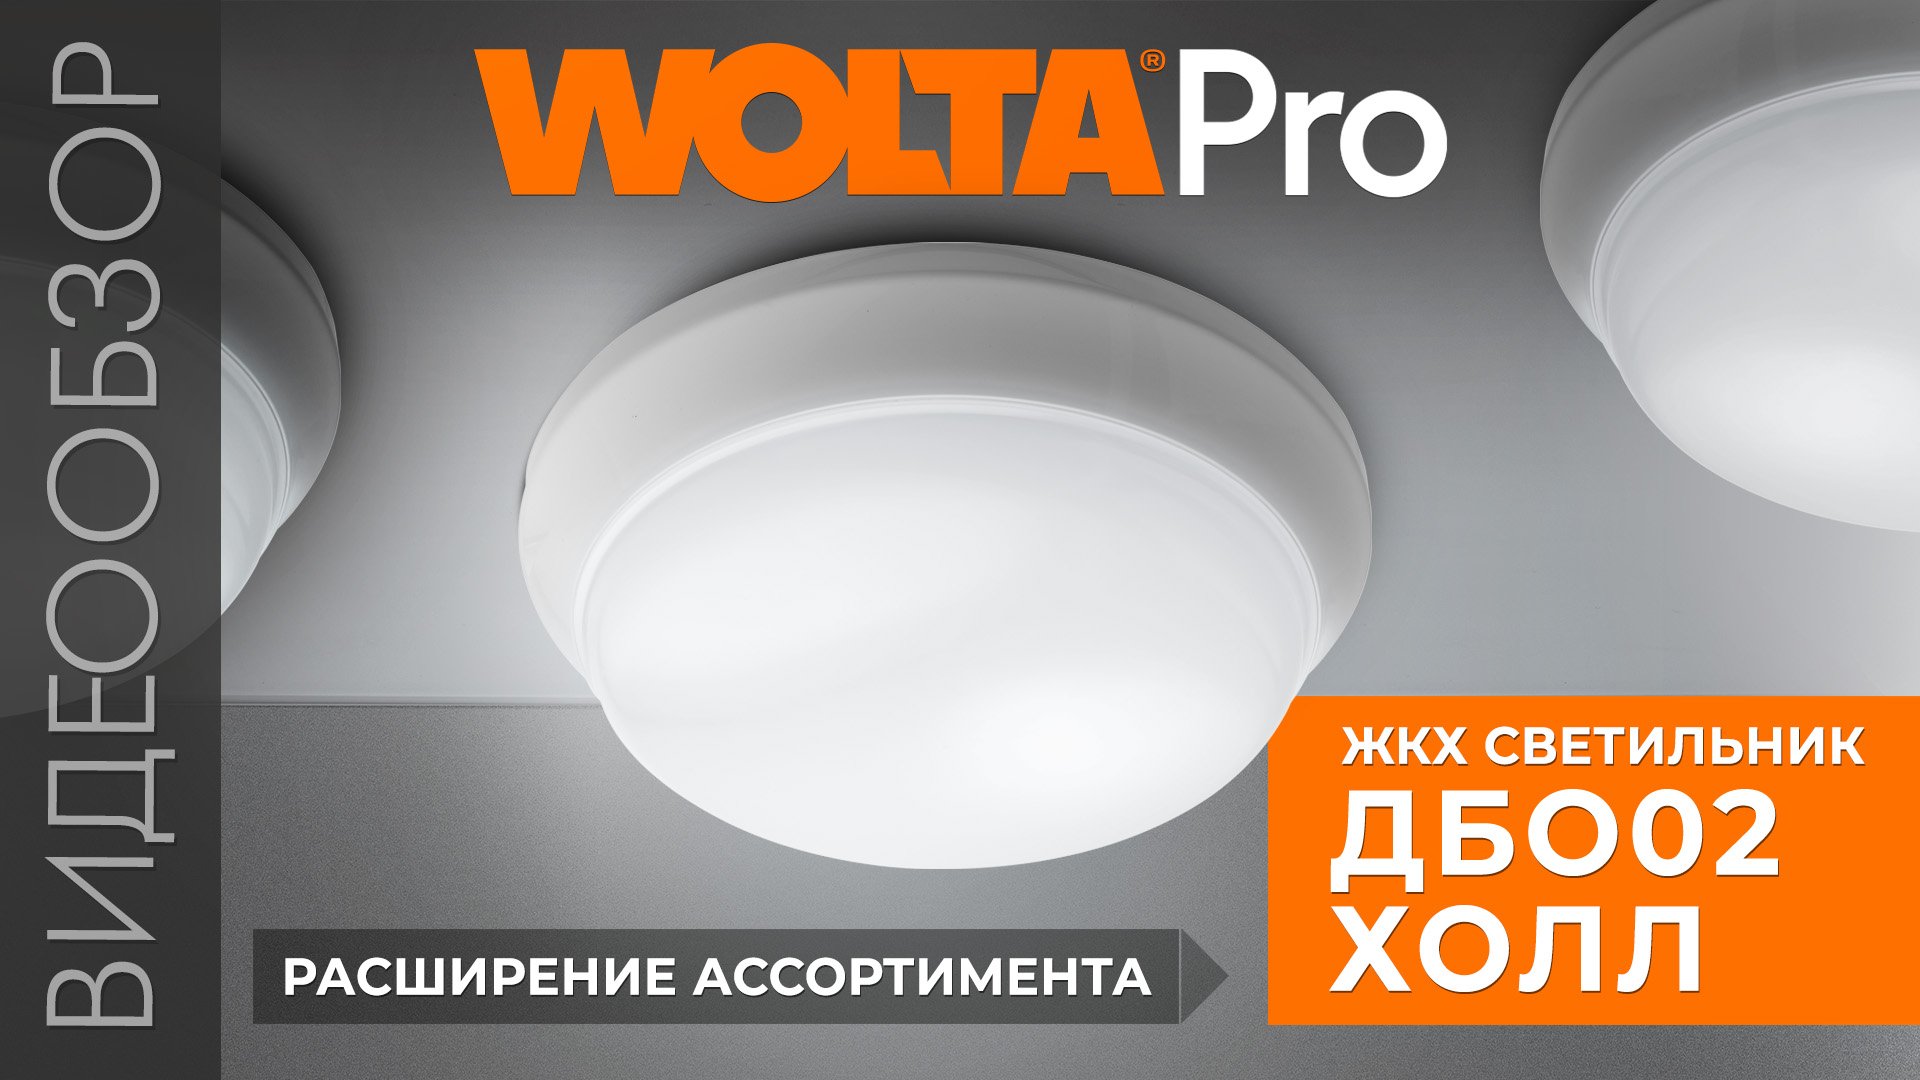 Расширение линейки светильников ДБО02 ХОЛЛ от WOLTA®Pro для сферы ЖКХ